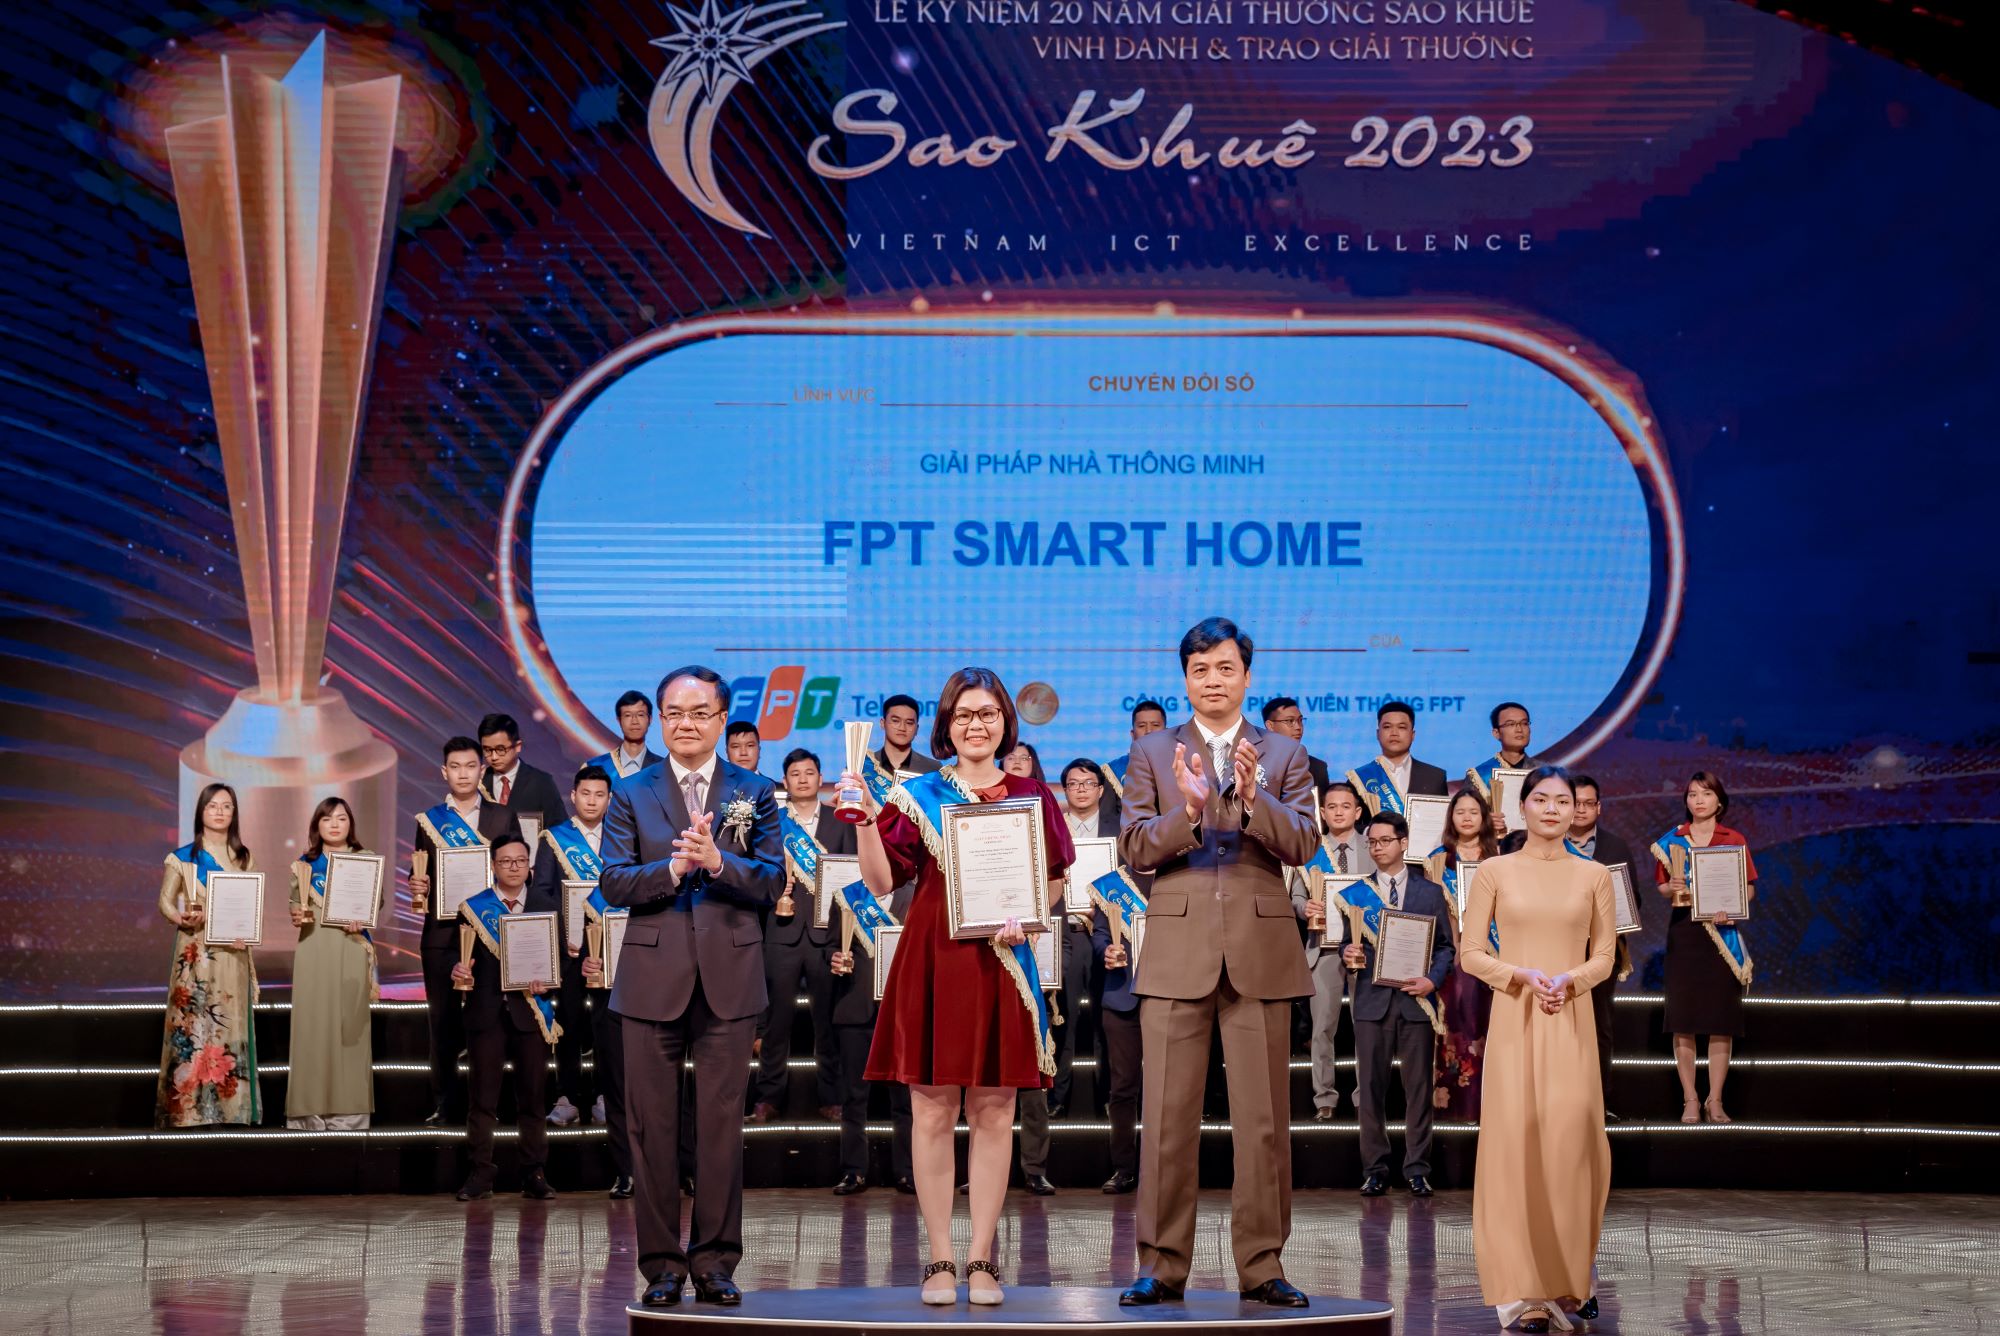 Đại diện FPT Smart Home nhận giải Sao Khuê 2023